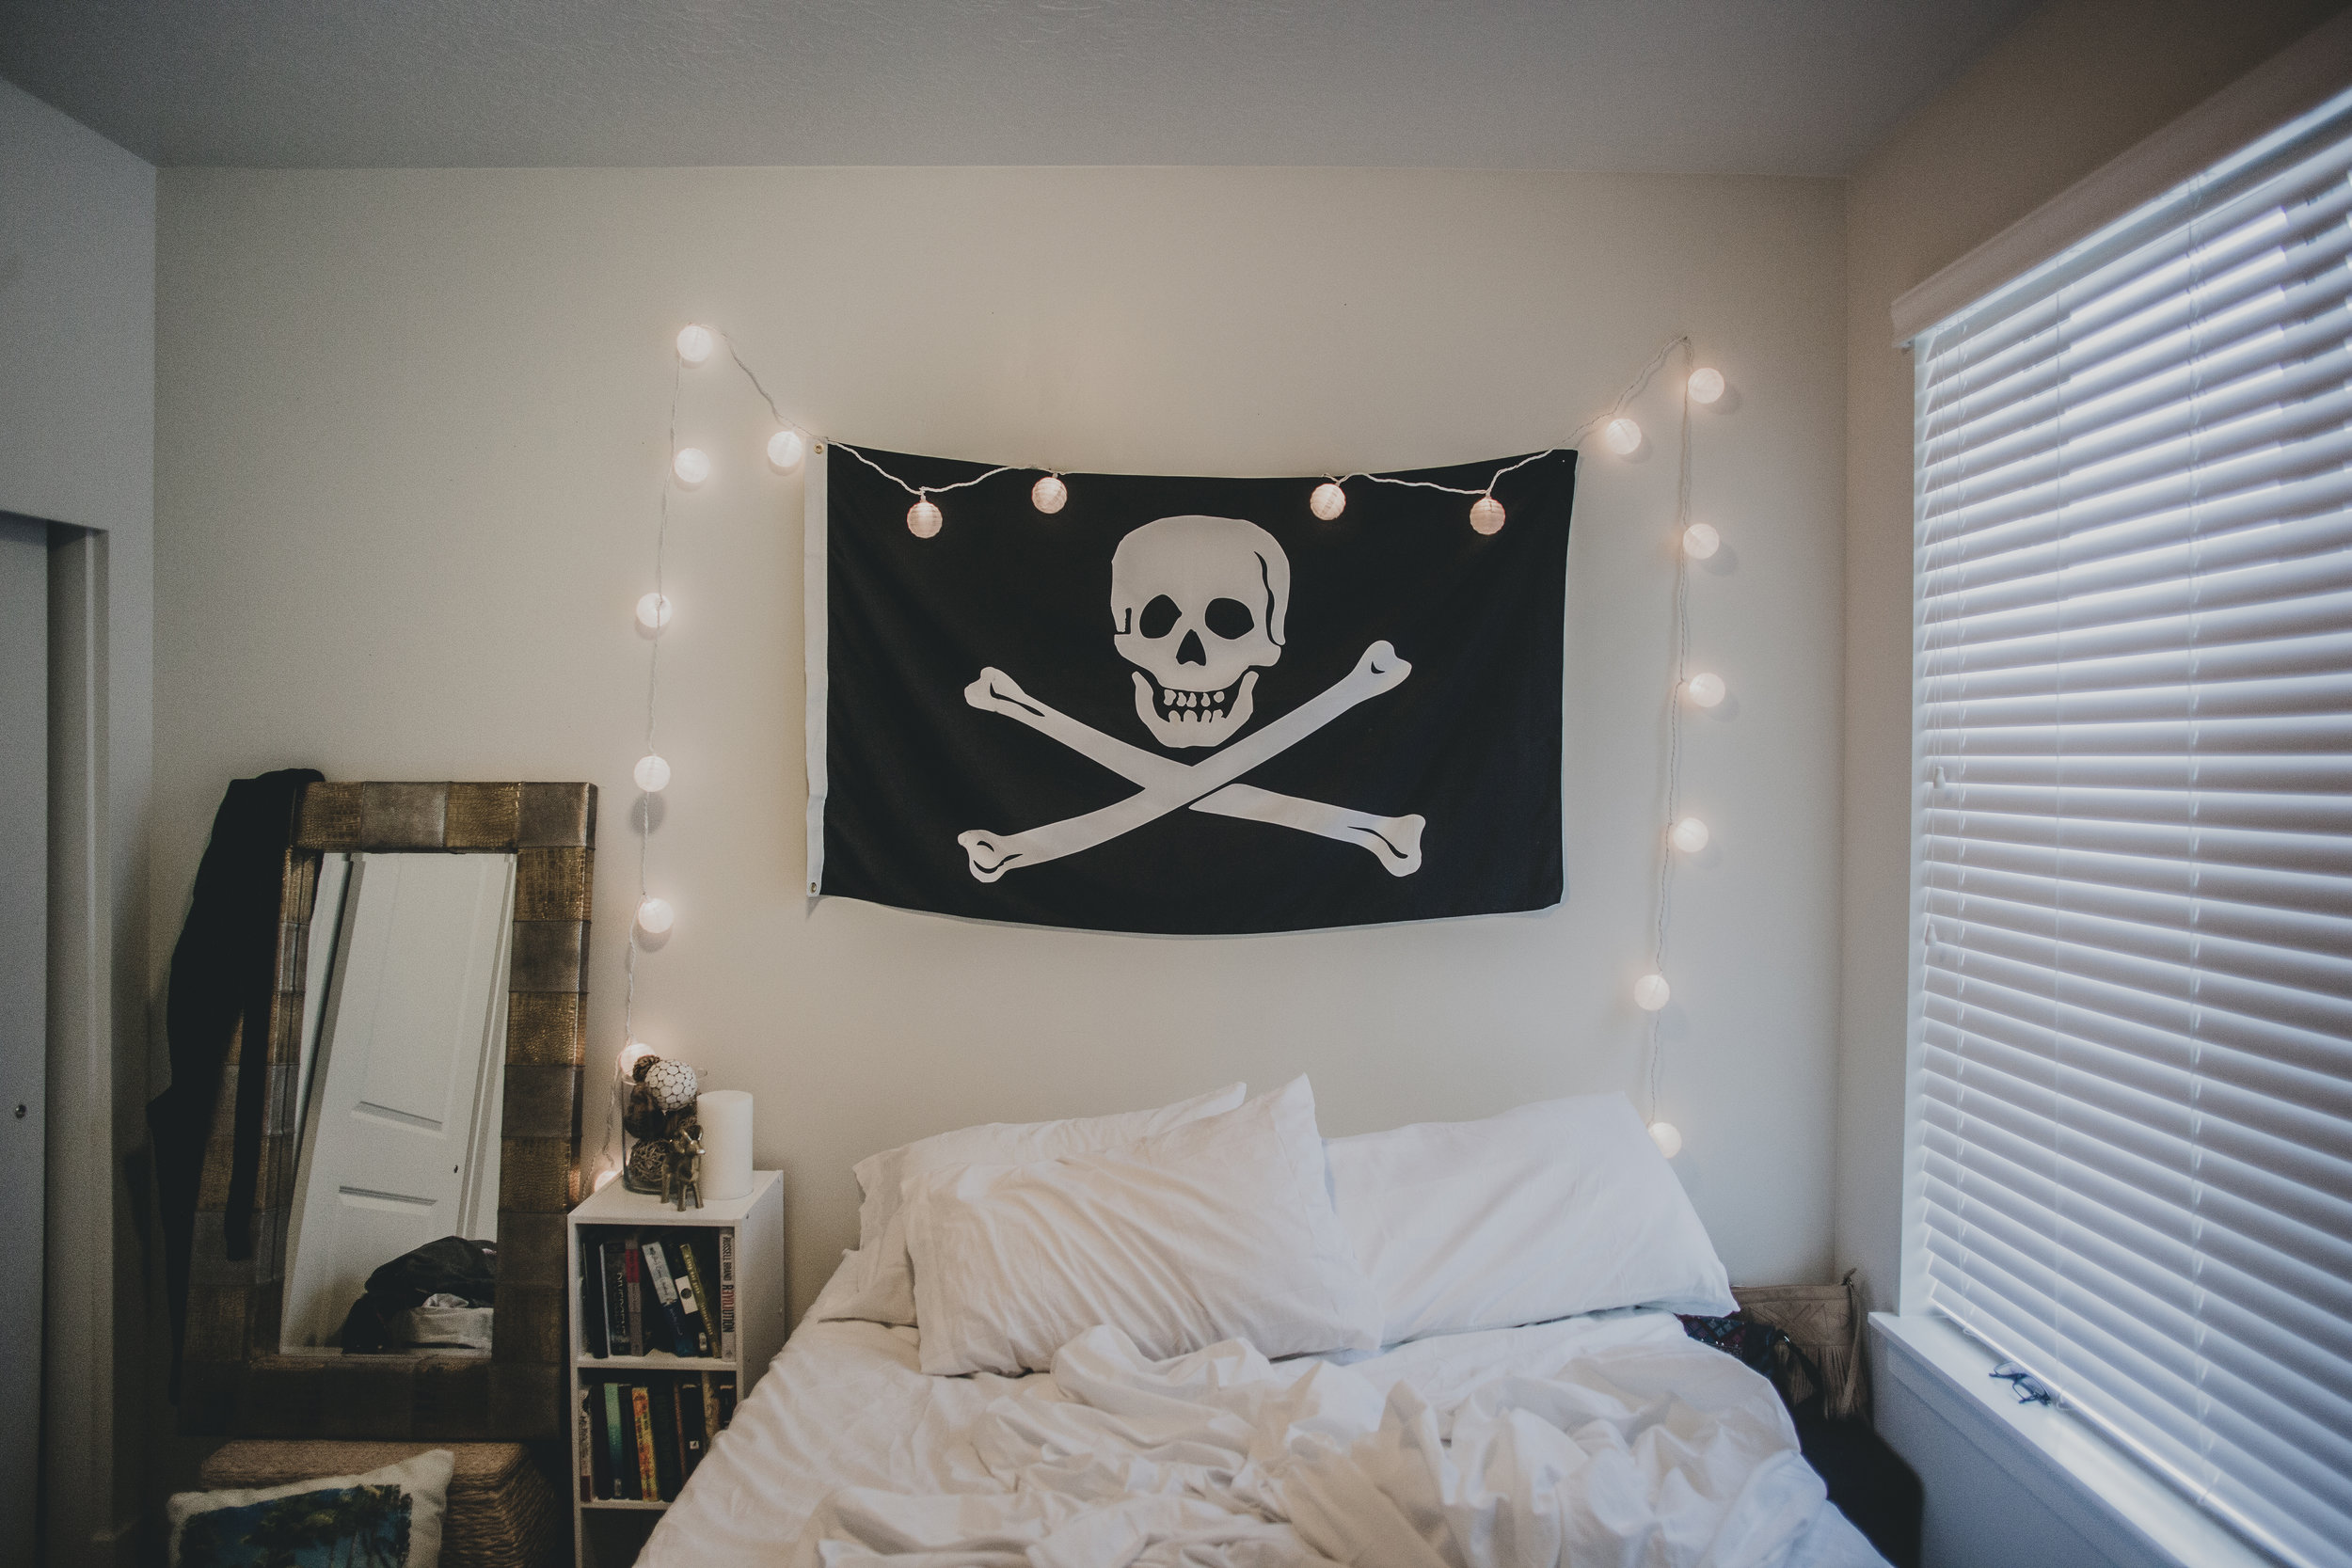 © duston-lifestyle-room-pirate-flag-lights.jpg